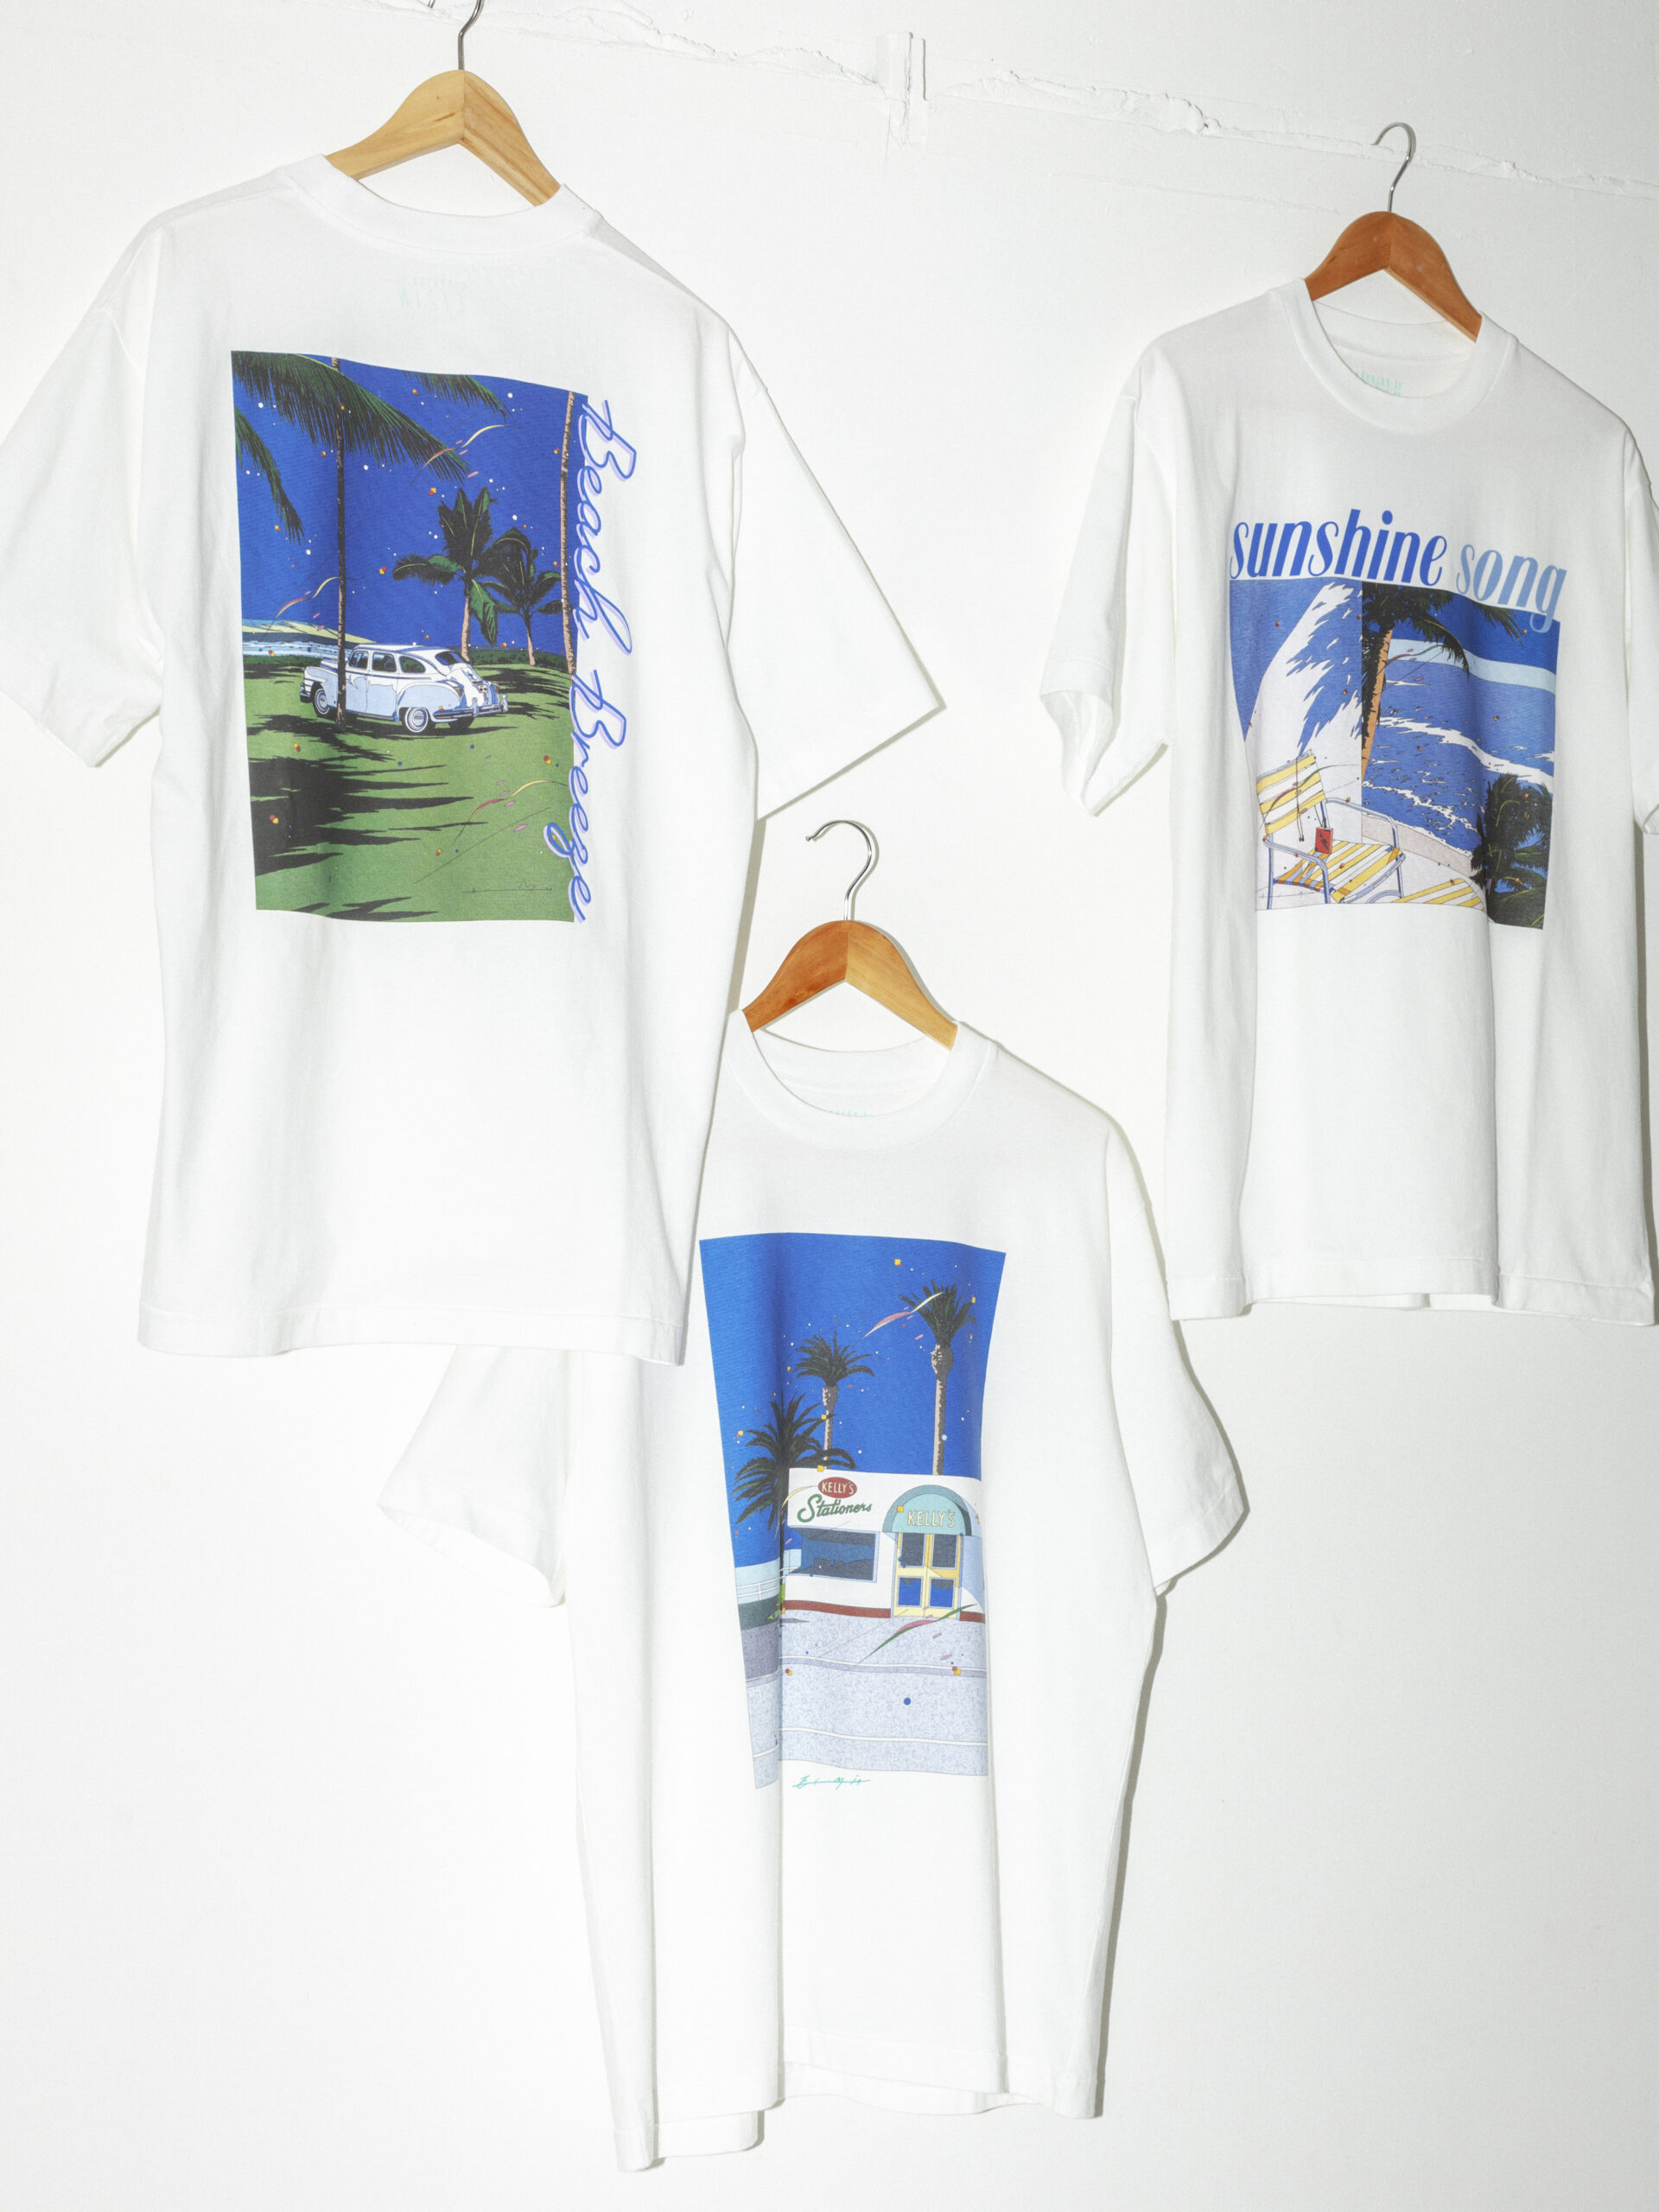 「ビューティ&ユース」 × 鈴木英人のTシャツ 各¥7,700